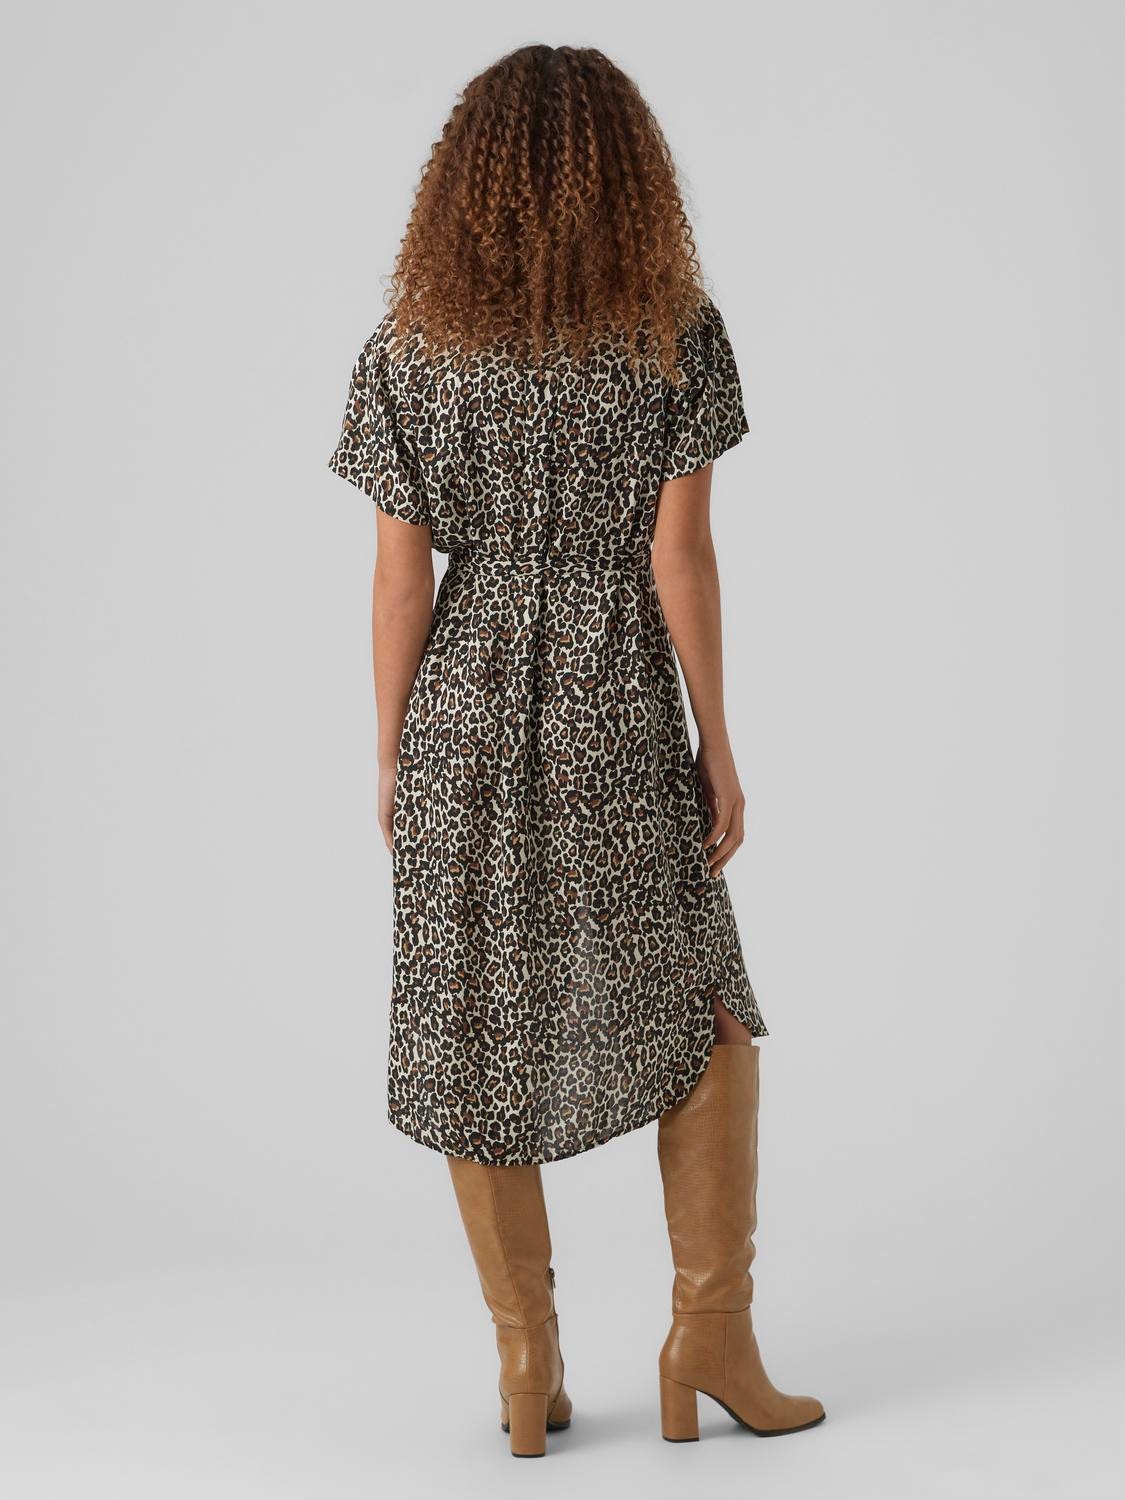 Leegte Depressie Paine Gillic Lange jurk | Lichtgrijs | Vero Moda®